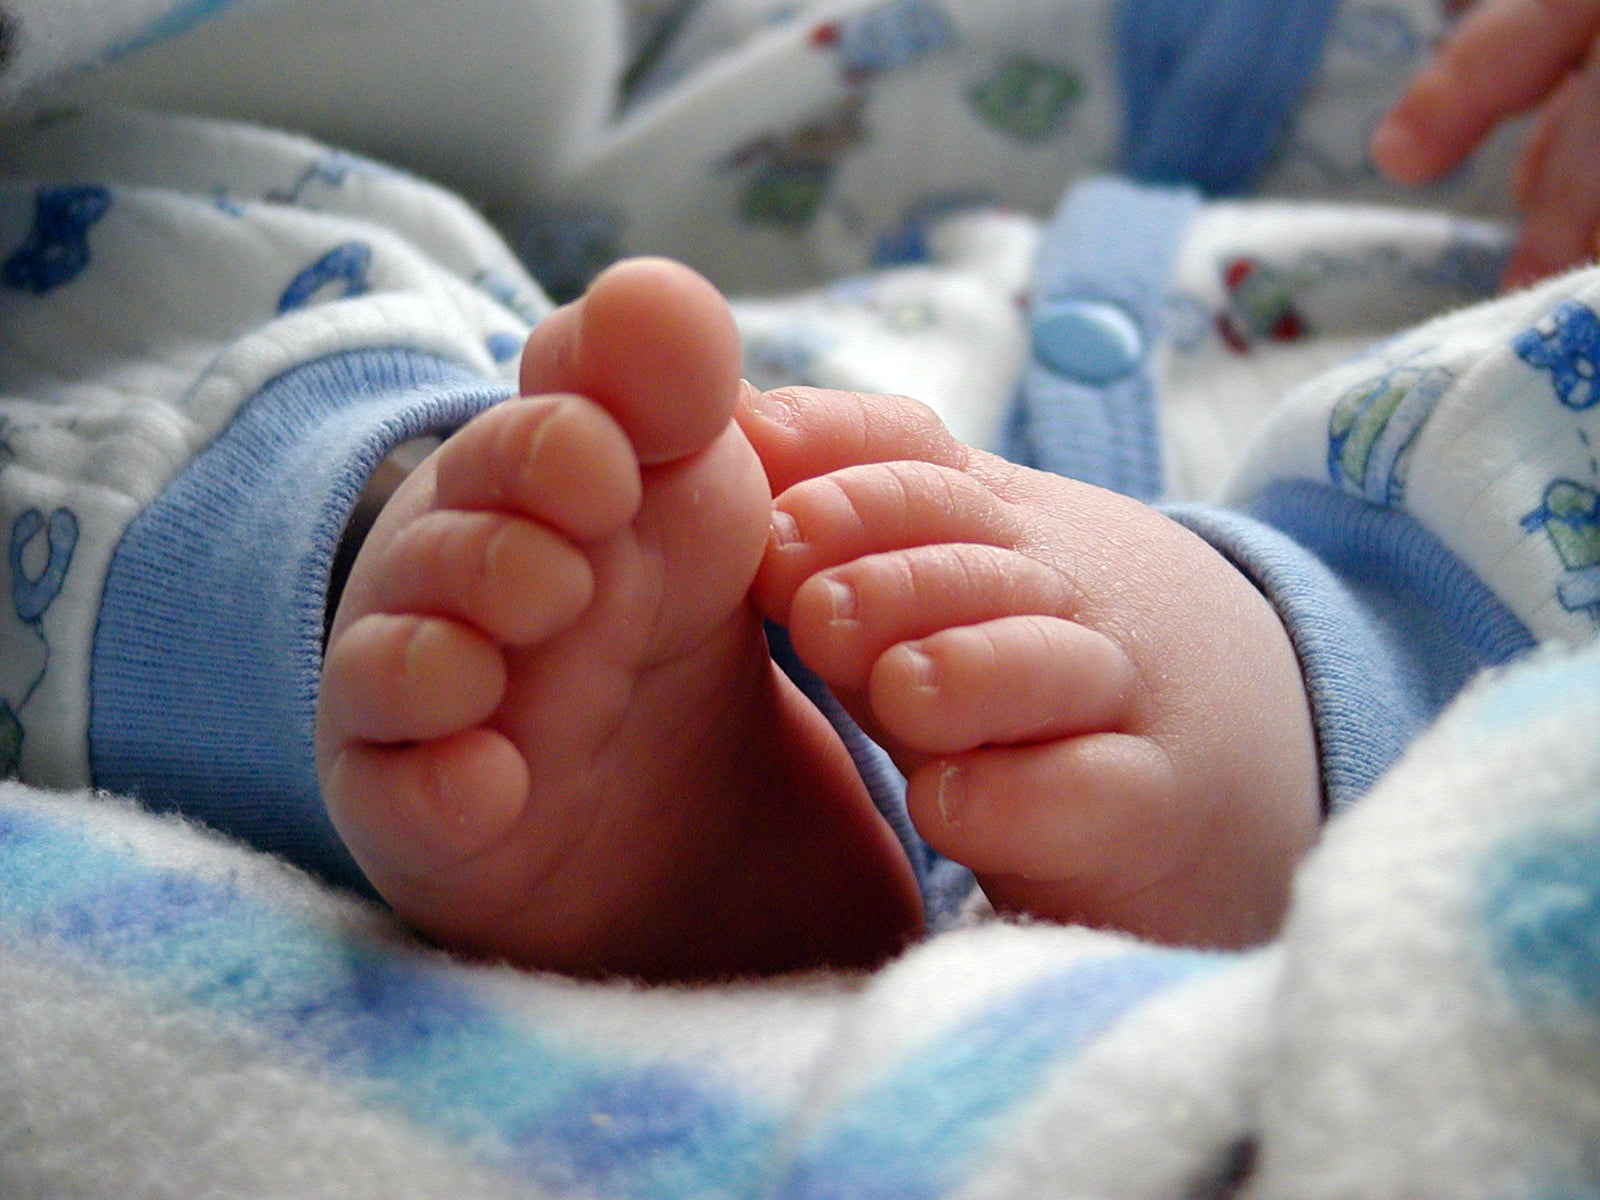 Saiba quais as Preocupações mais comuns com o recém-nascido